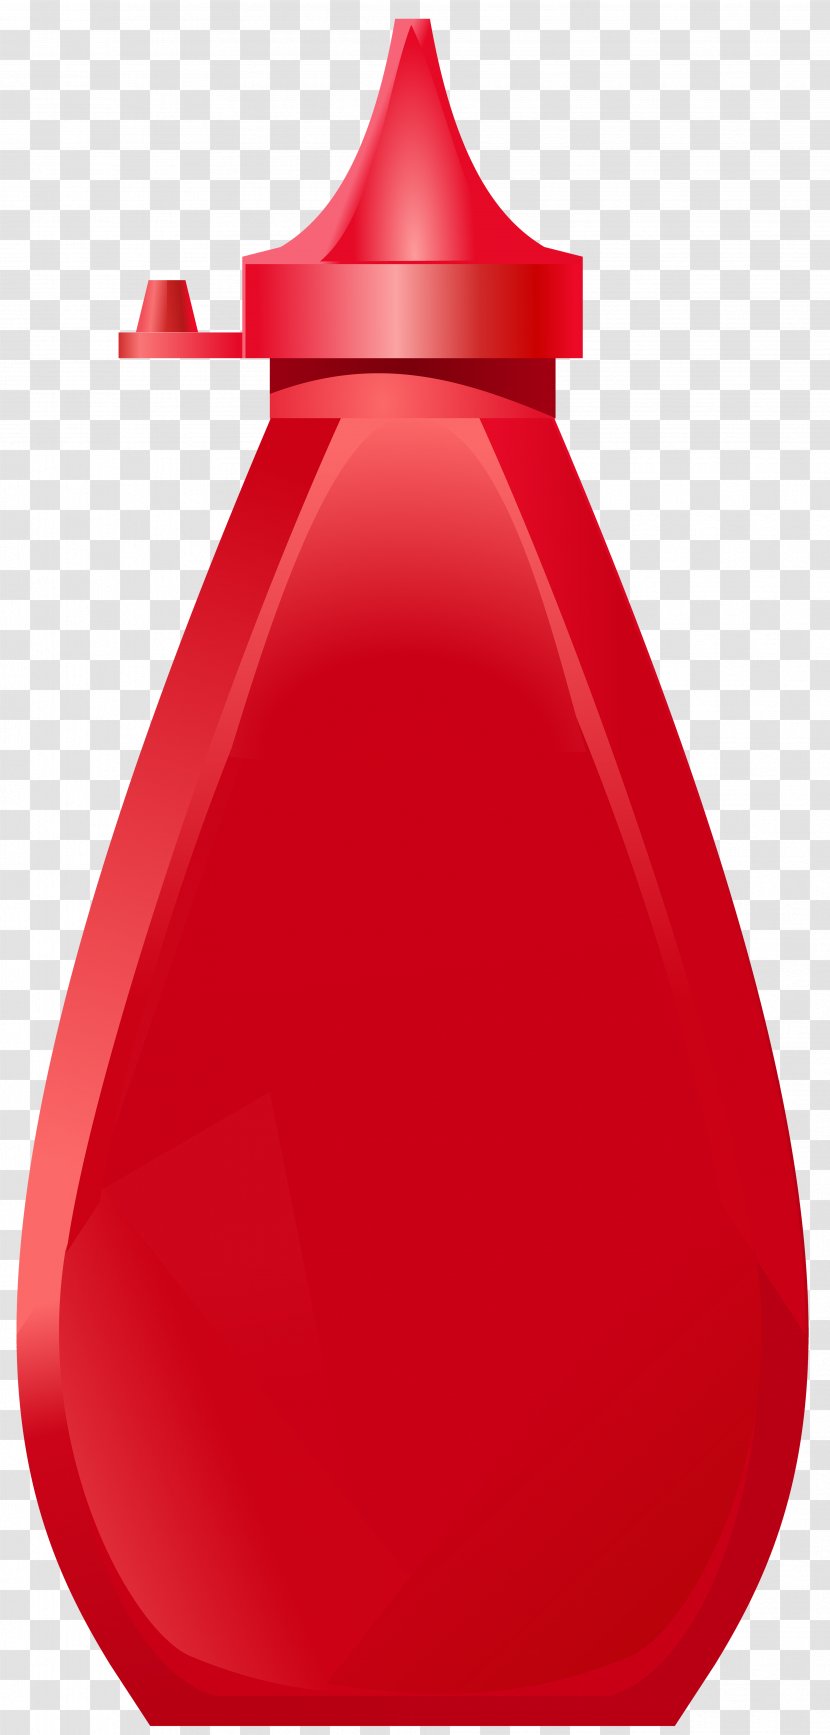 Ketchup Bottle Clip Art - Product Design - Transparent Image Transparent PNG